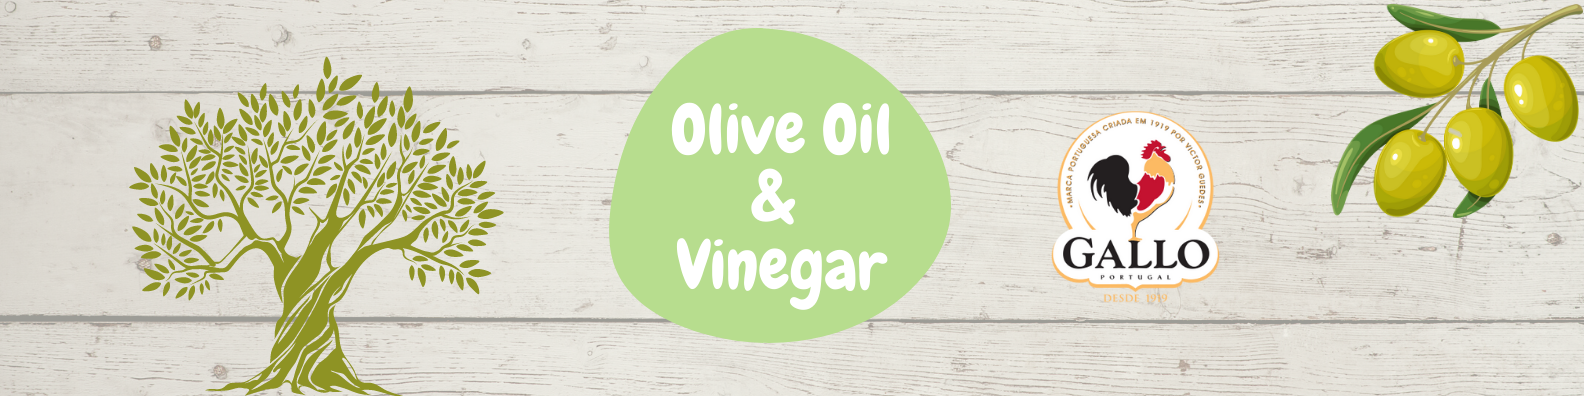 Olive oil & Vinegar